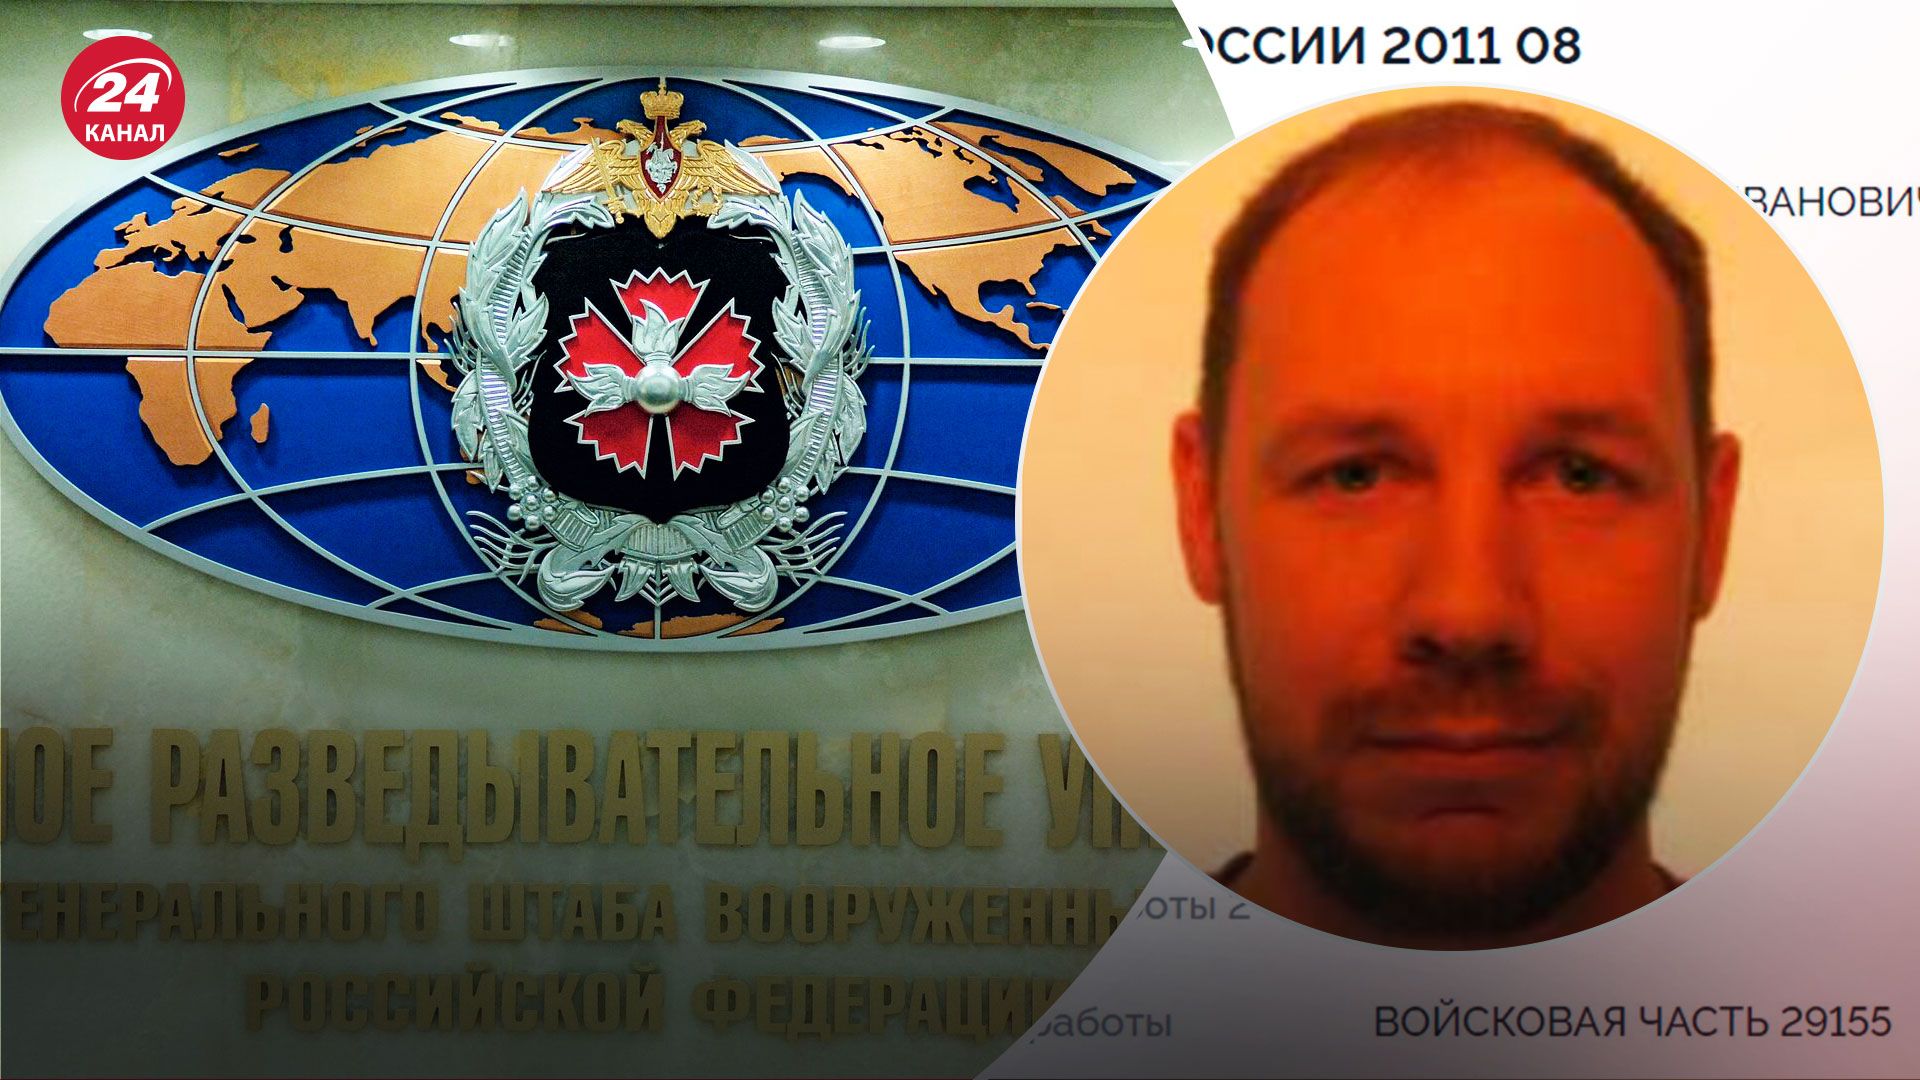 Сотрудник ГРУ Иван Жигарев выдавал себя за активиста и правозащитника